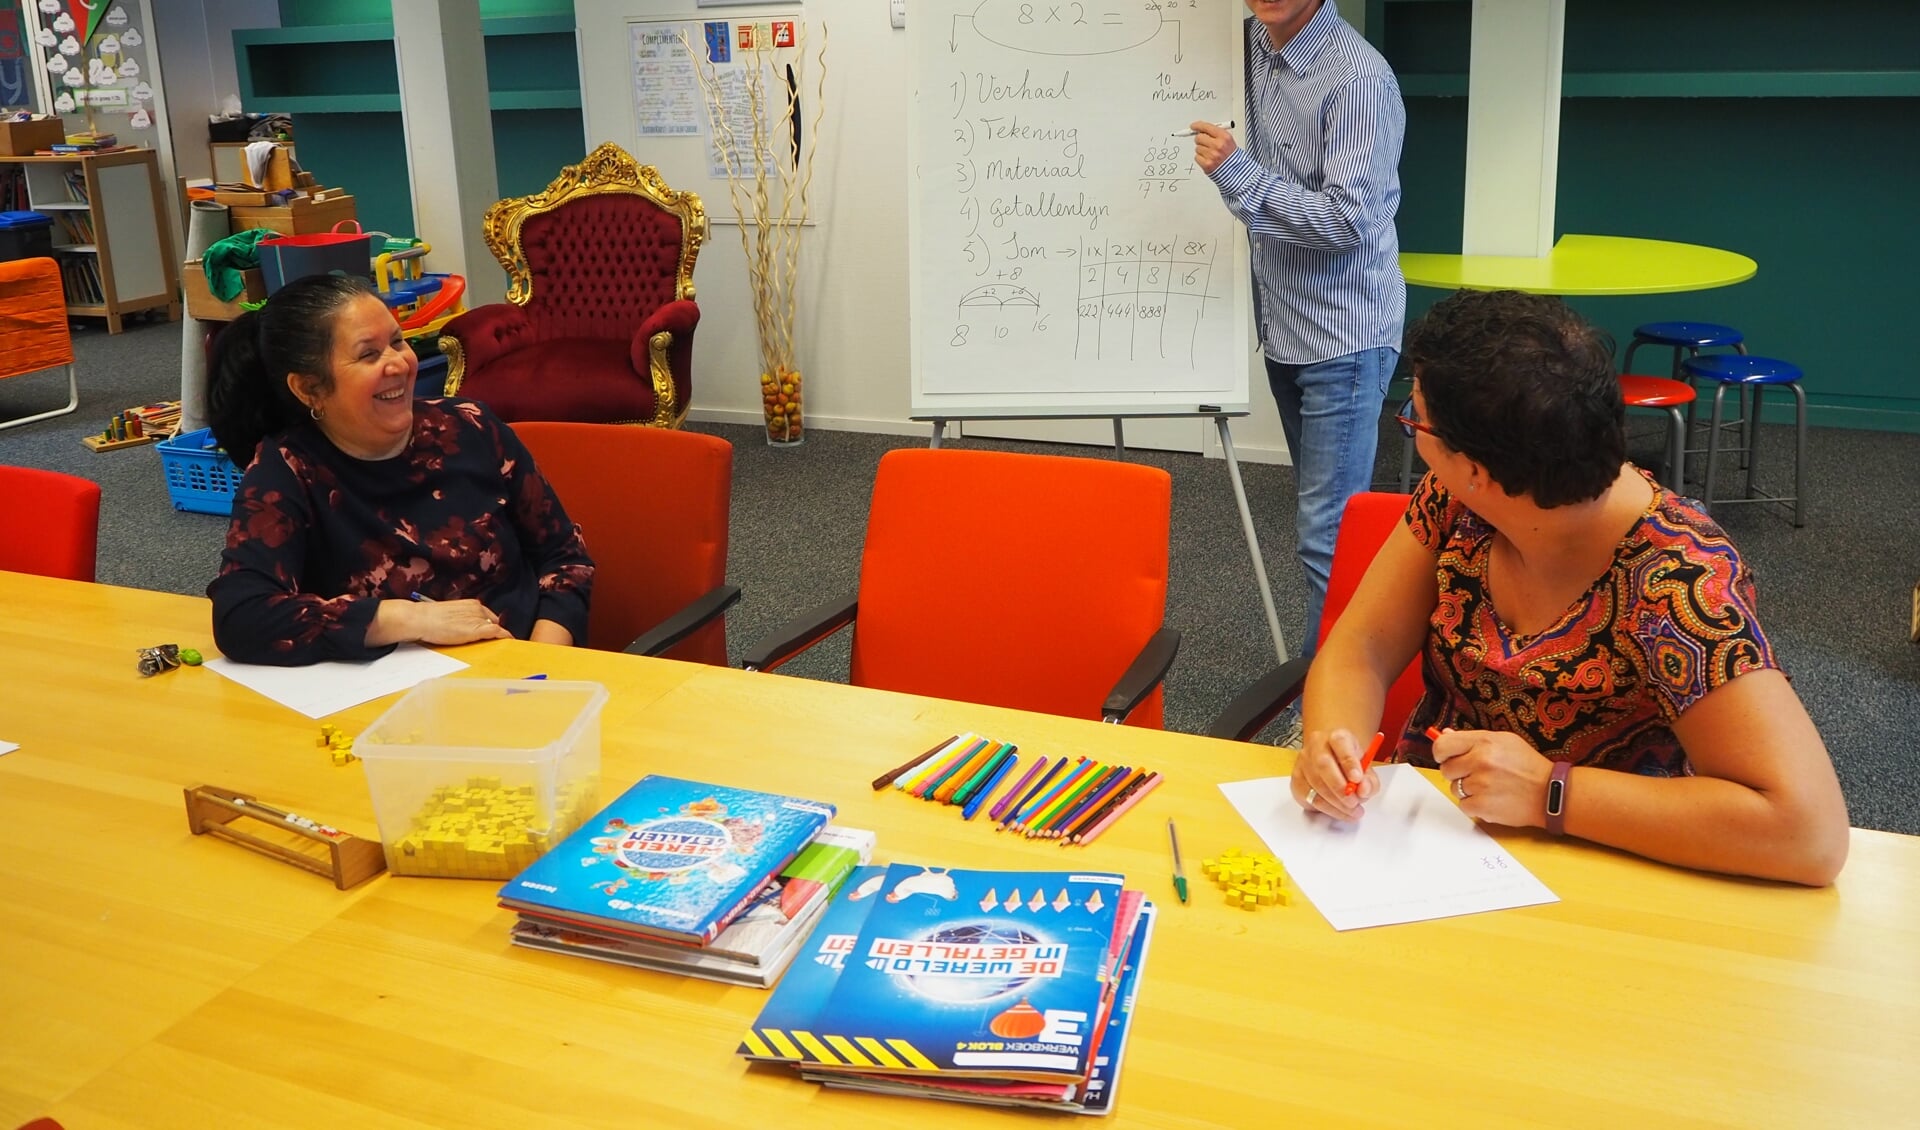 Onderwijsassistenten van Daltonschool de Poorter krijgen training van rekenspecialist Jeroen van der Jagt 